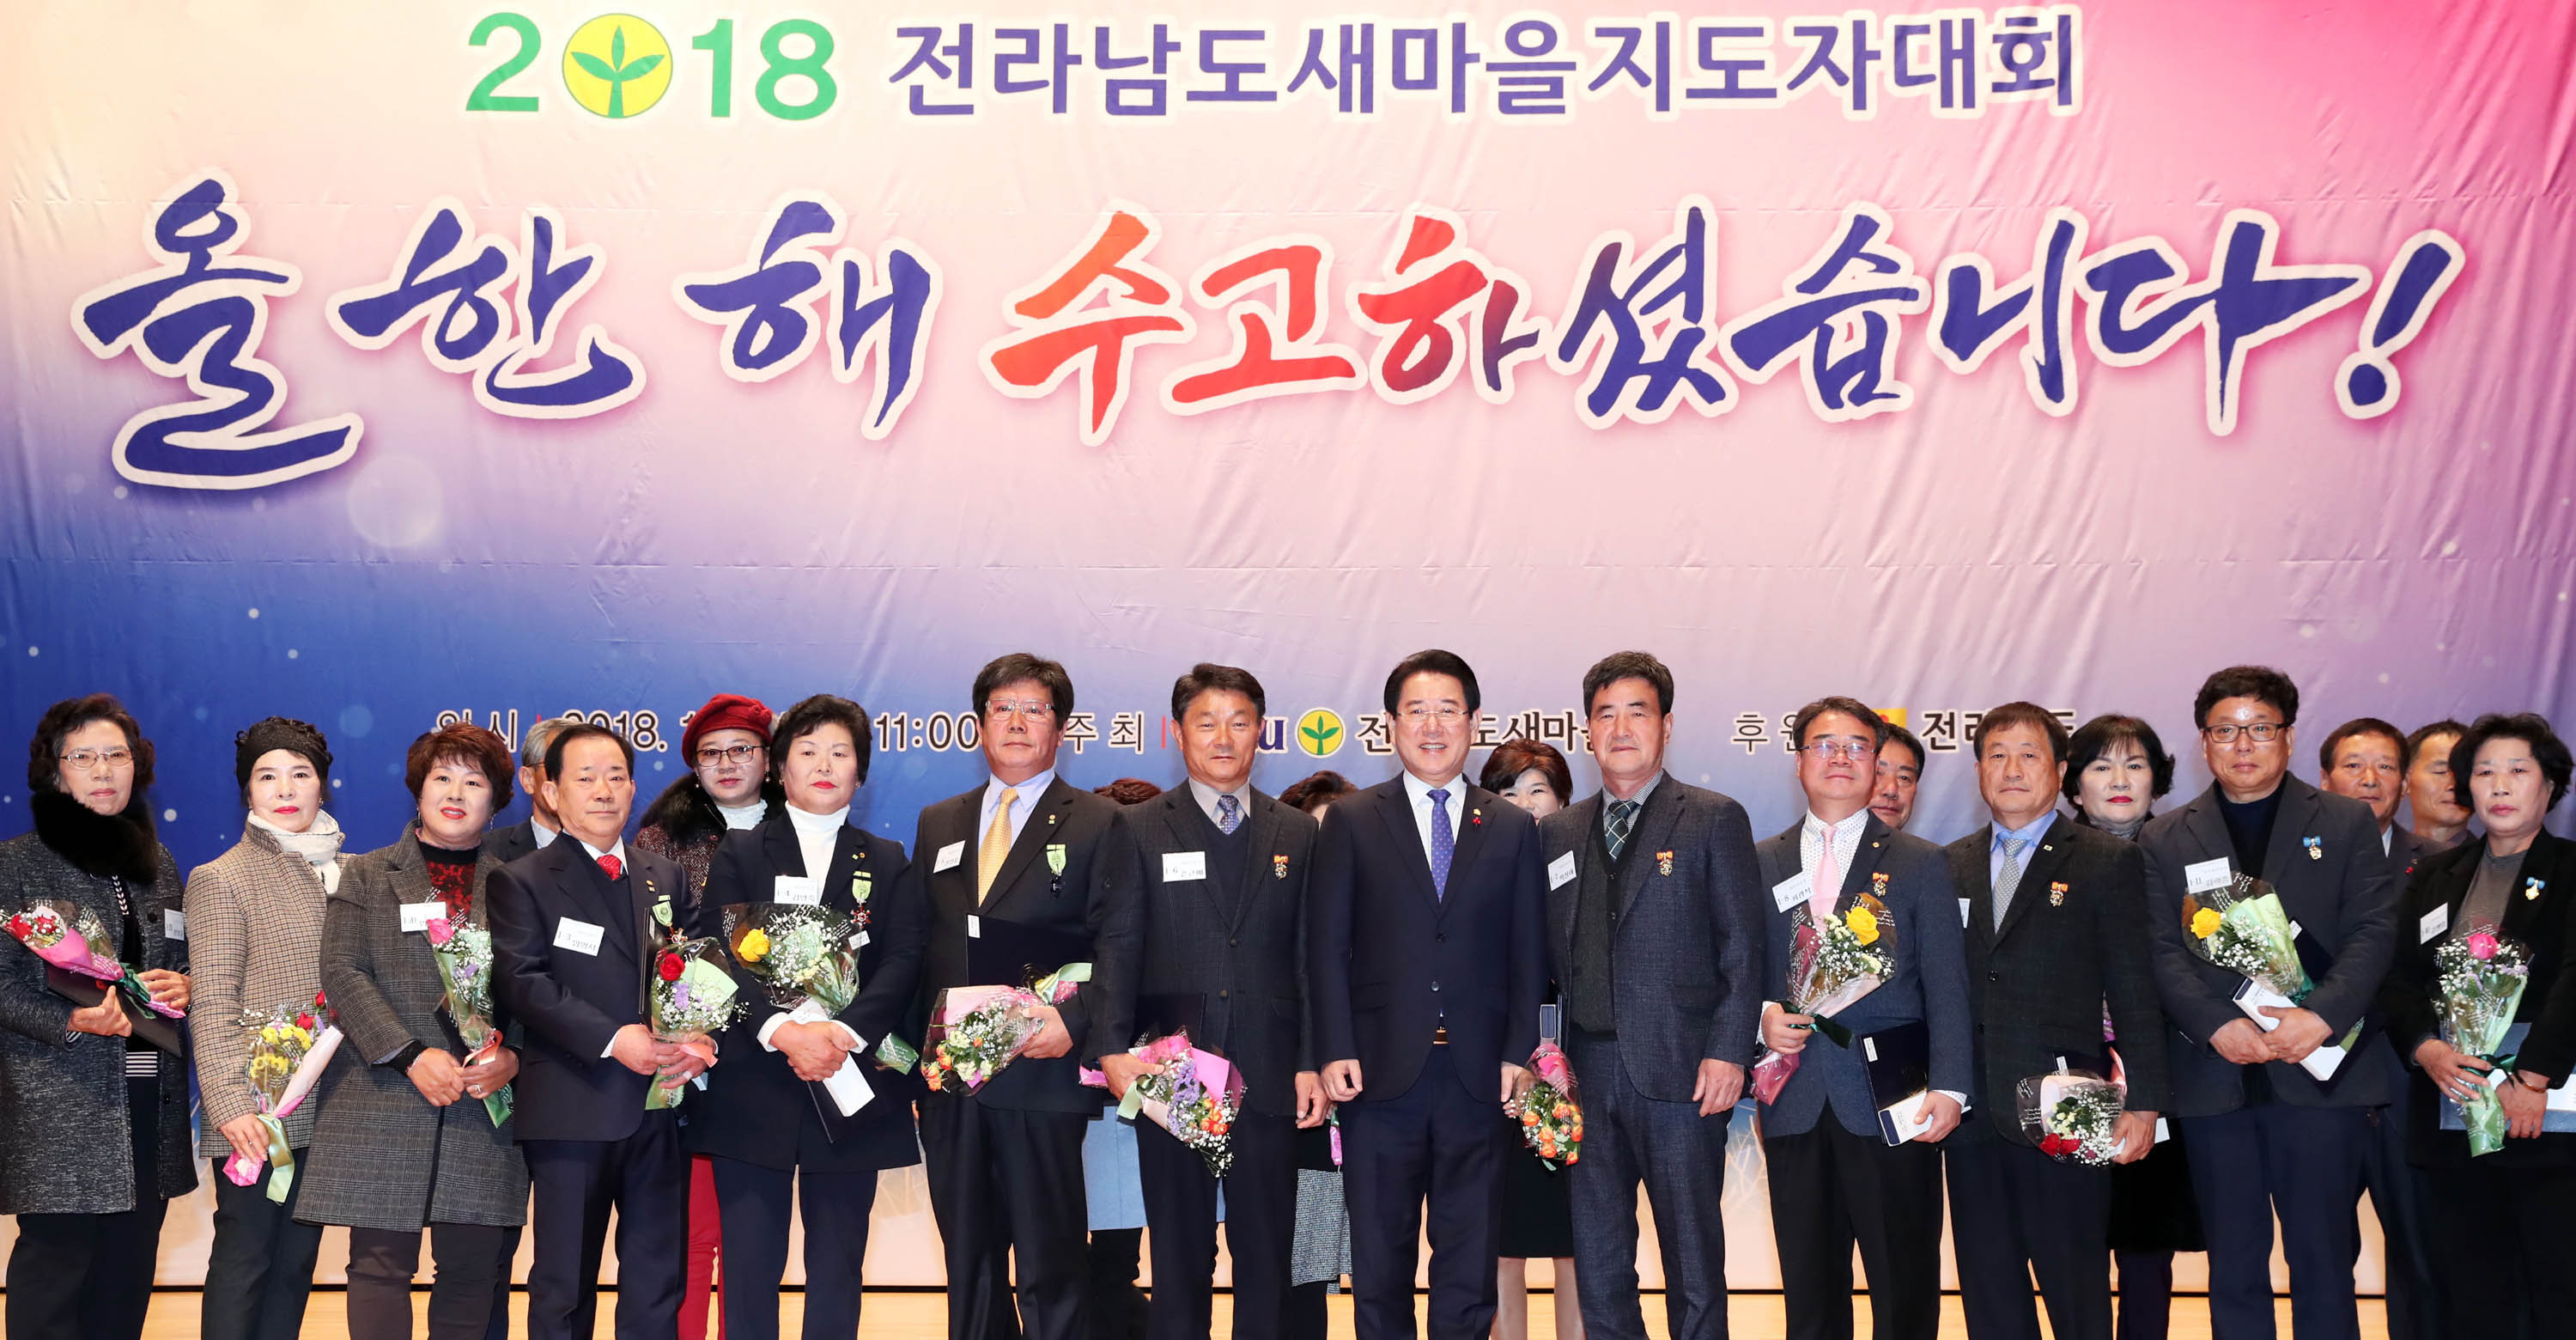 2018 전라남도새마을지도자대회2